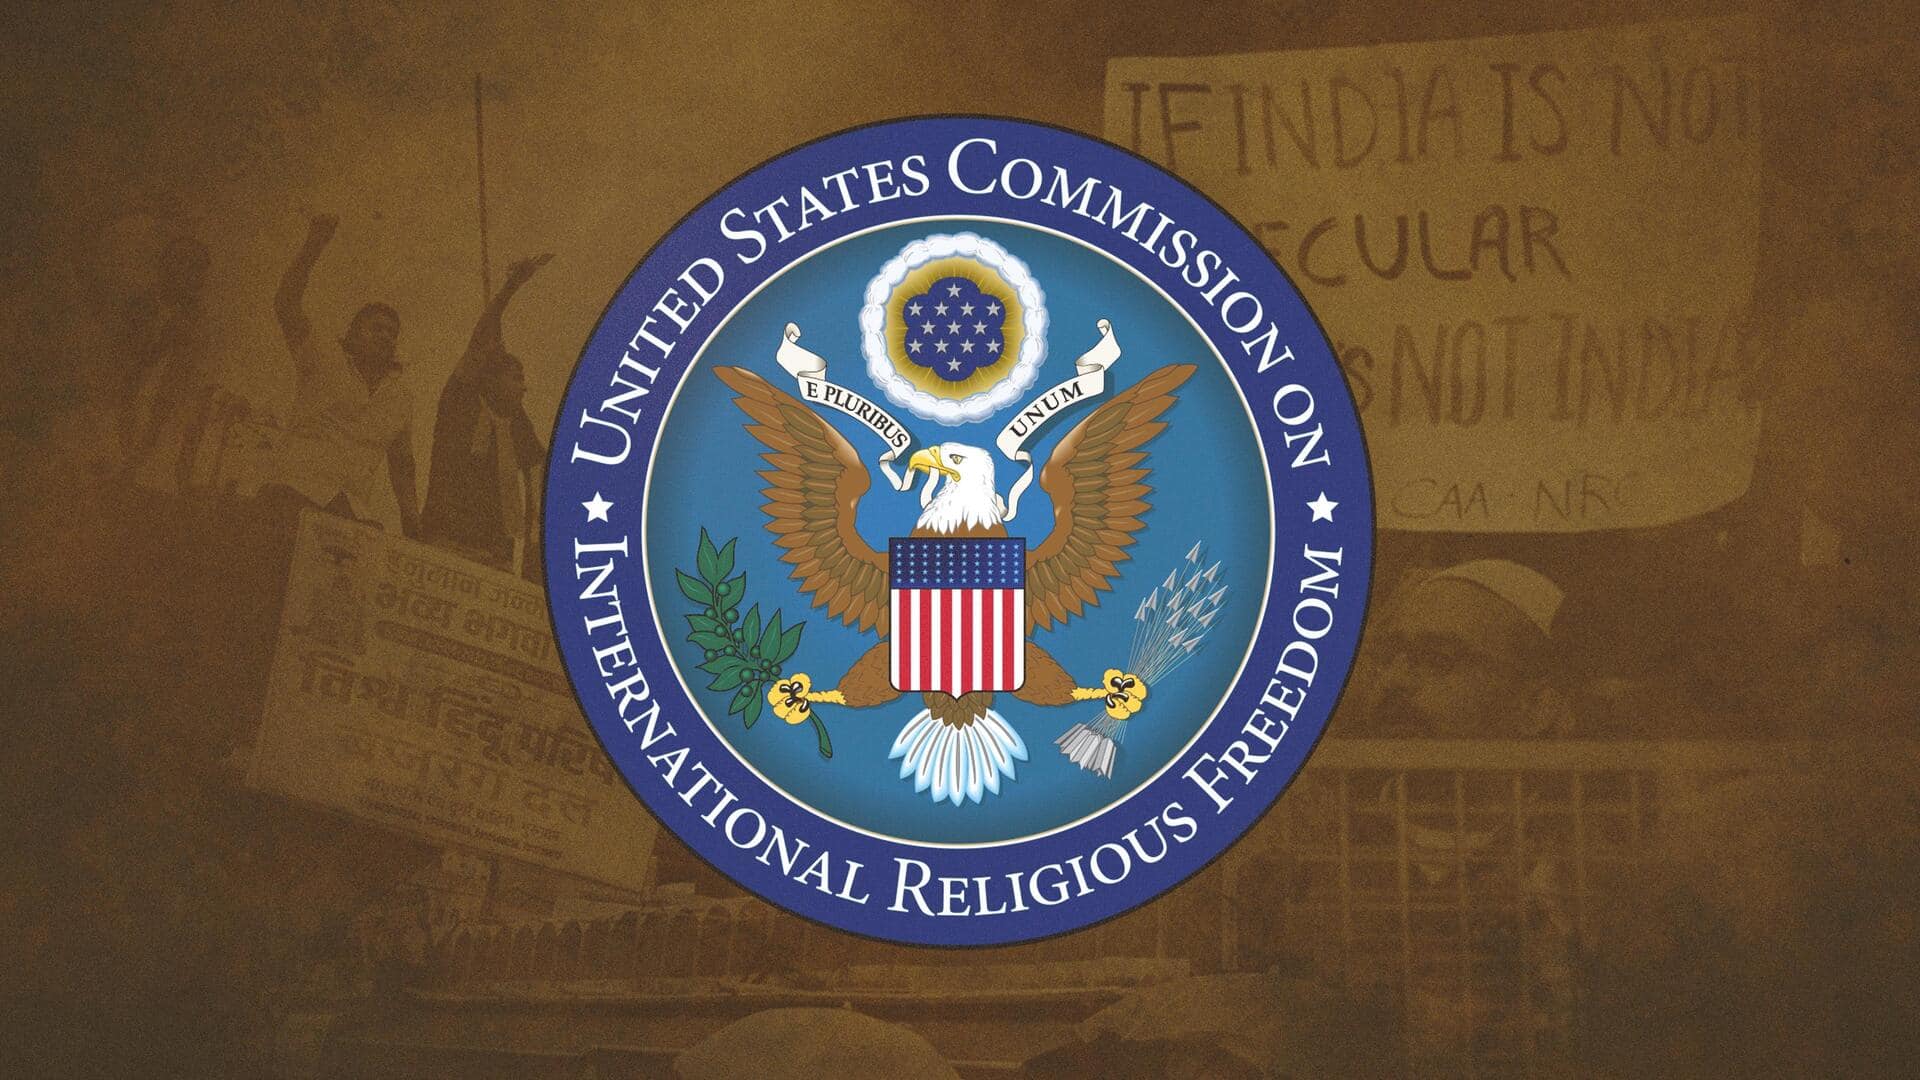 अमेरिकी आयोग ने भारत में धार्मिक स्वतंत्रता को लेकर एक बार फिर खड़े किए सवाल